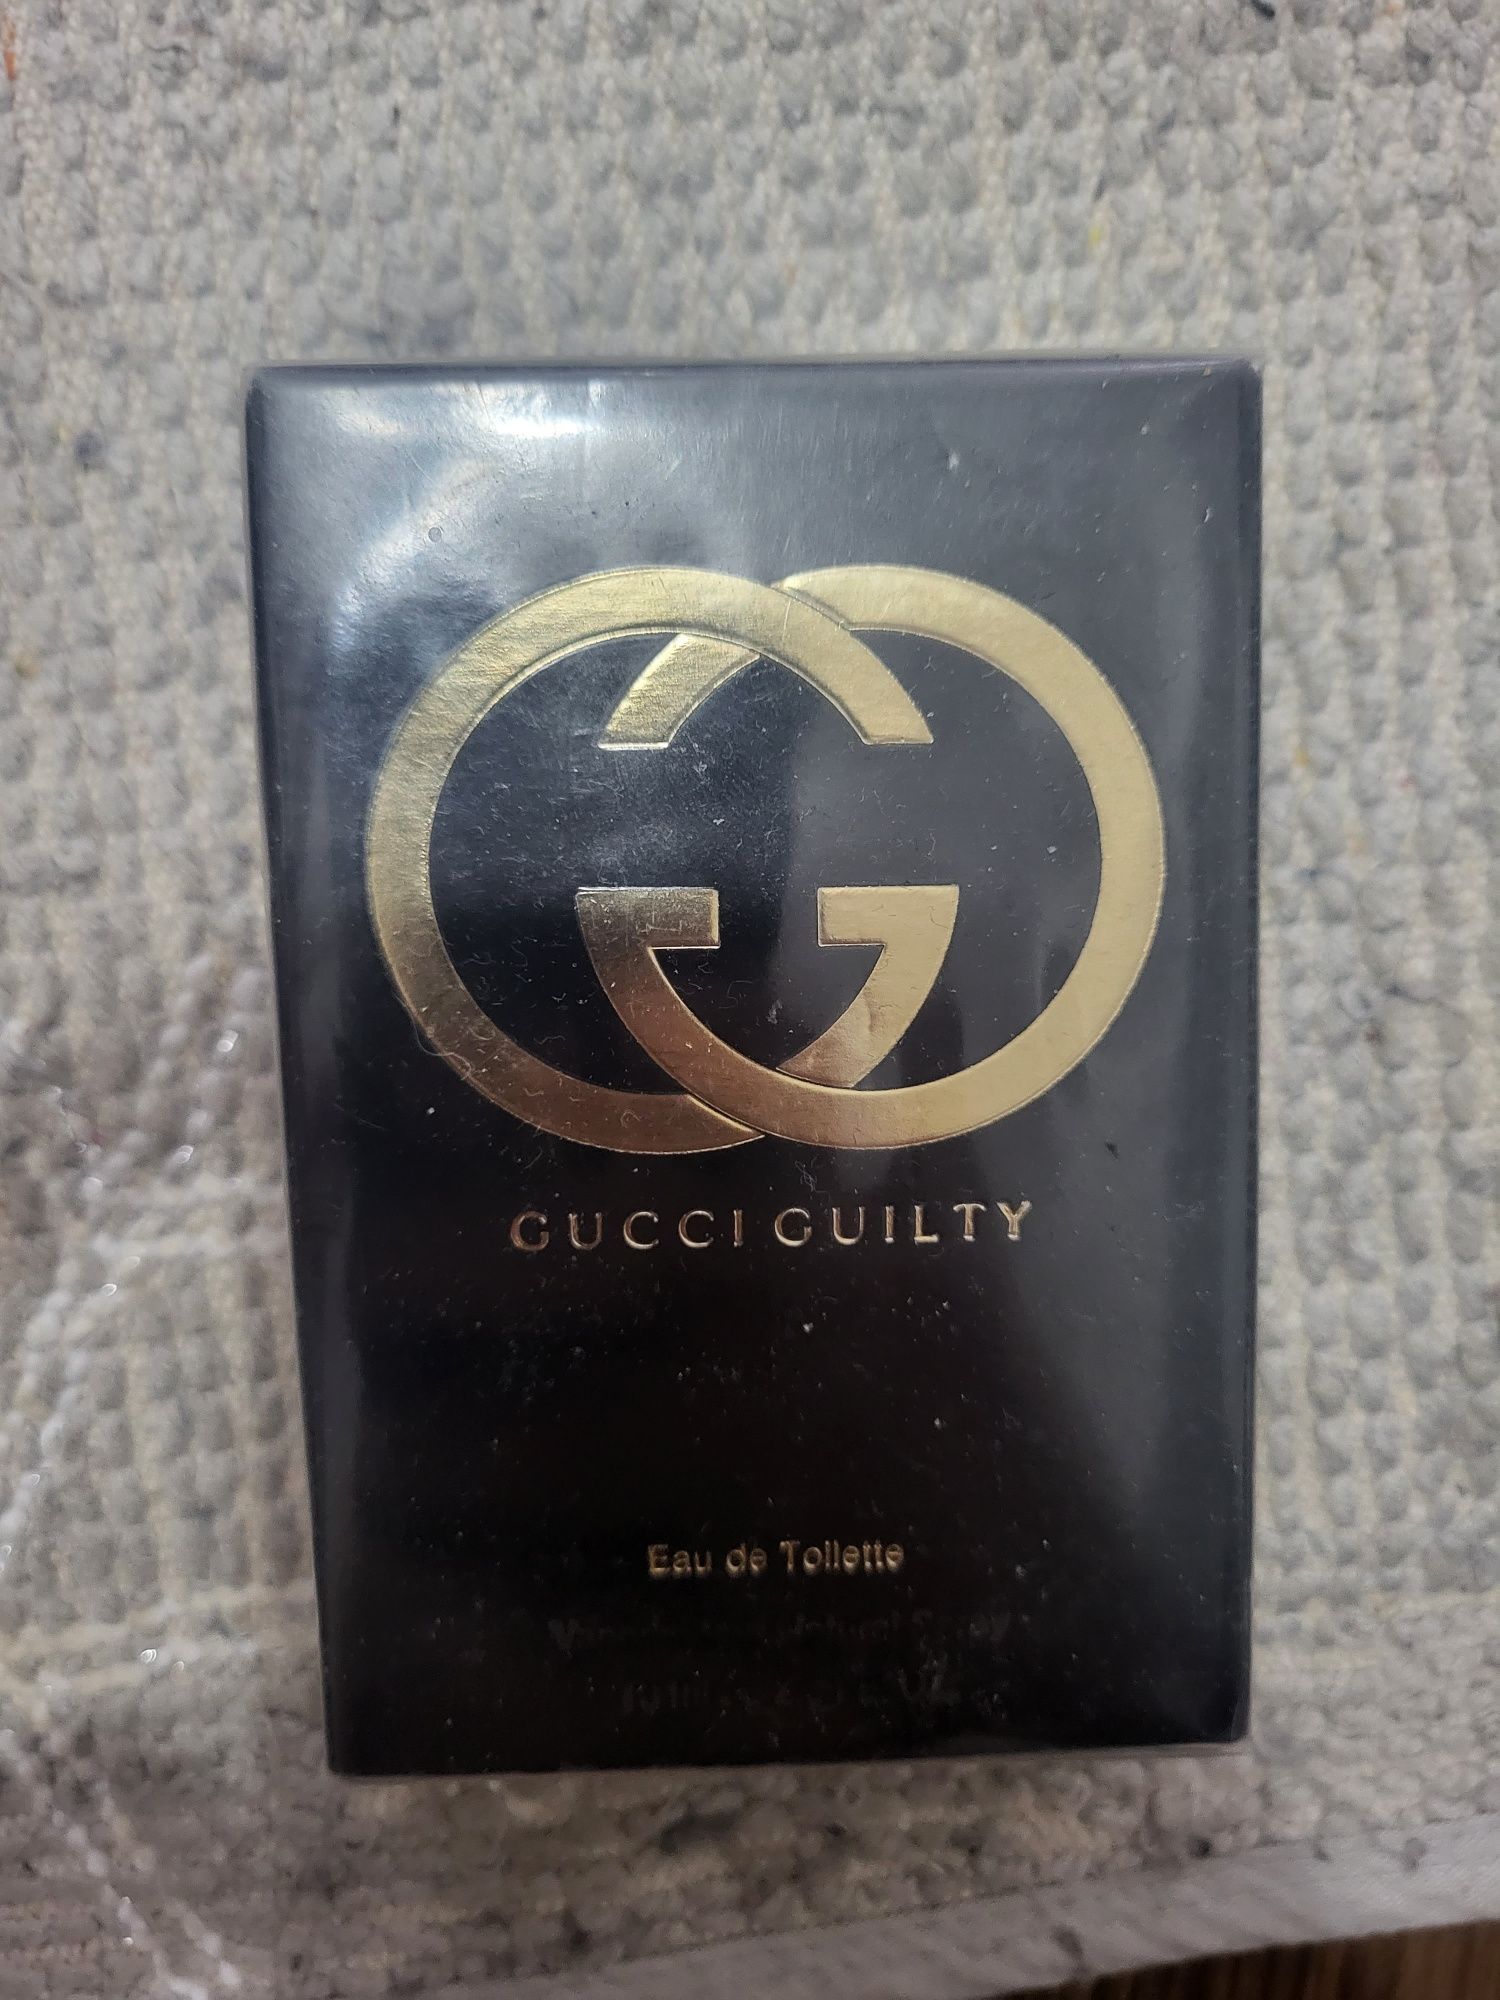 Vând parfum de lux Gucci Quilty 75 ml